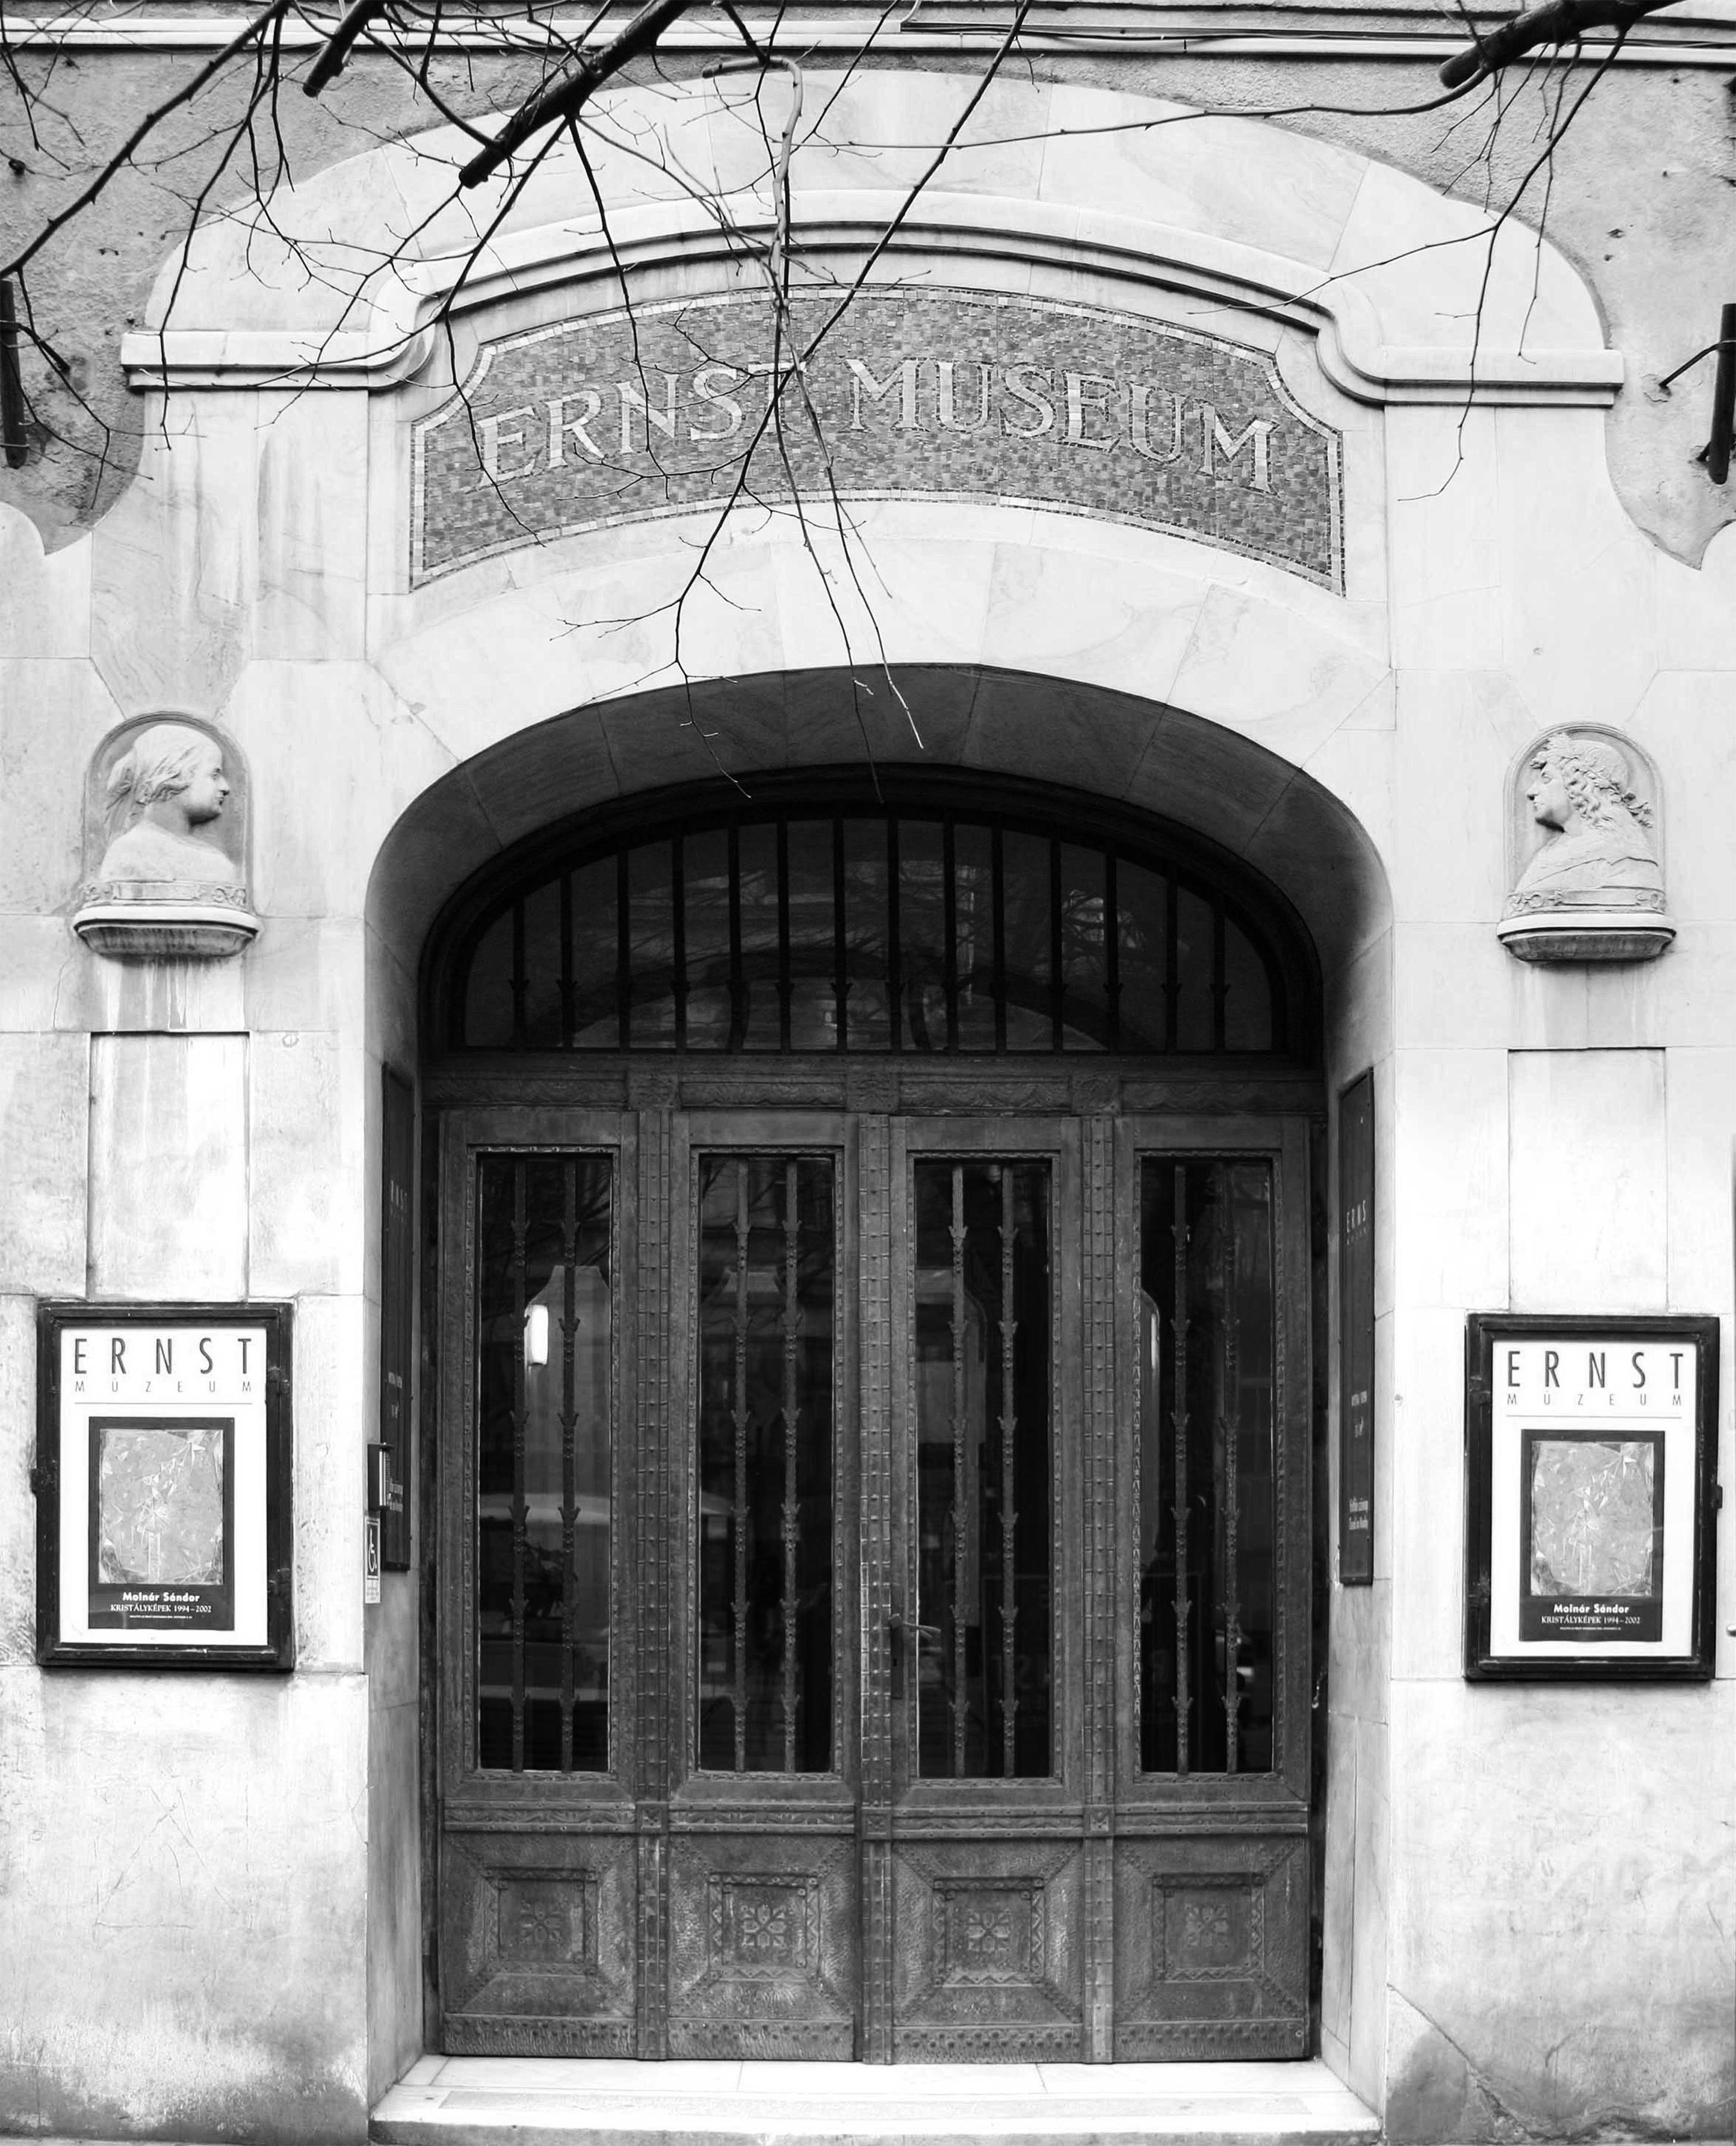 Ernst Front entrance